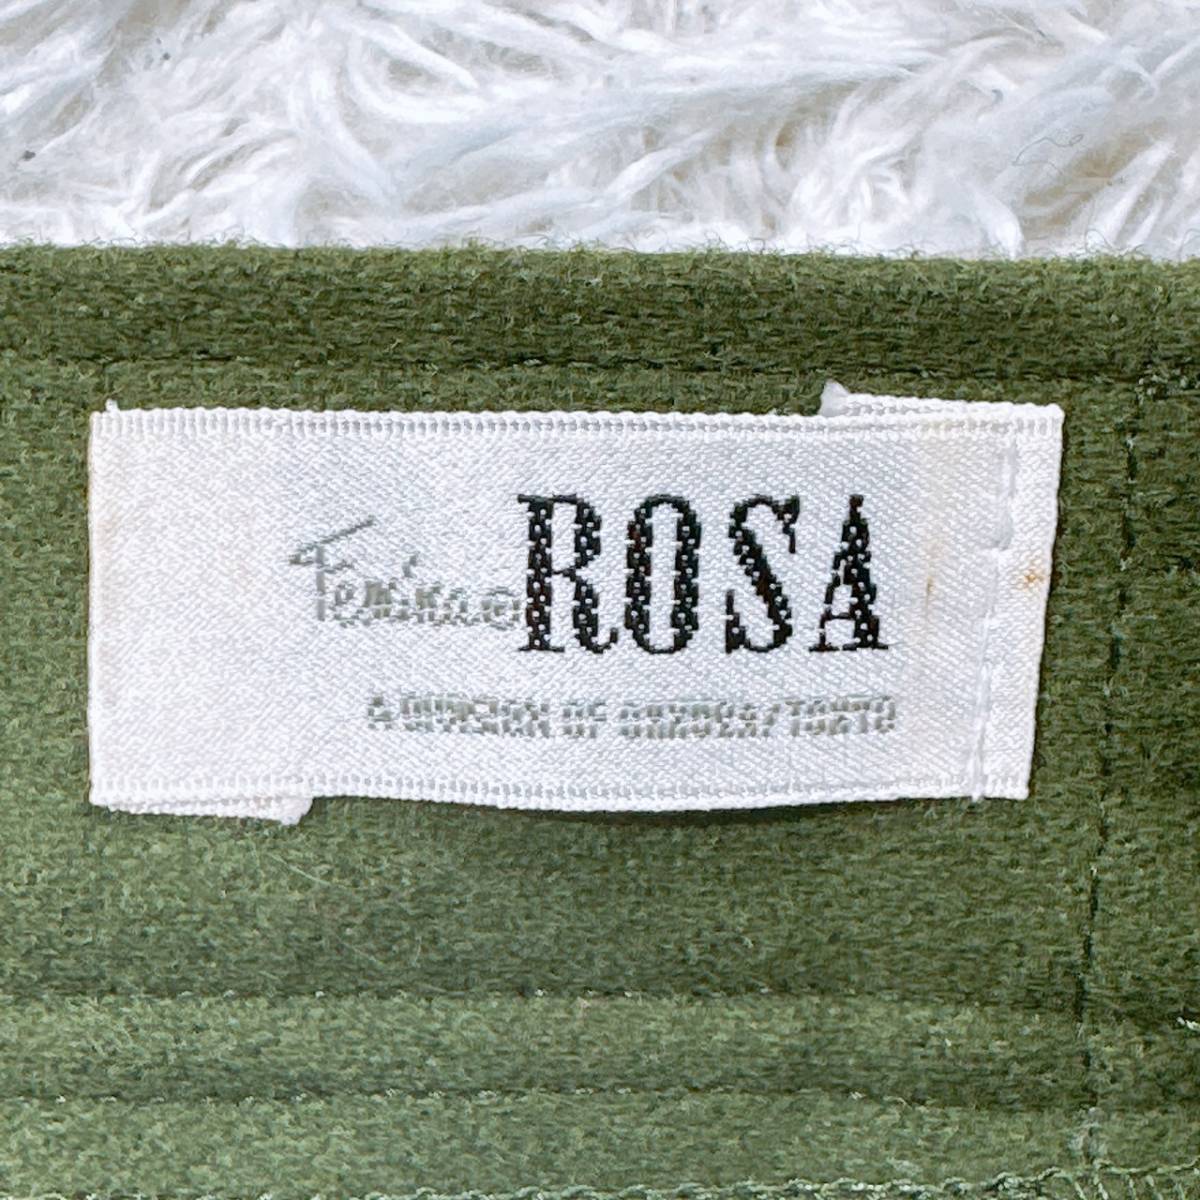 レディース ROSA スカート ロング オリーブ 緑 グリーン かわいい お出かけ ボタン カジュアル ウエストゴム 秋 冬 【25843】